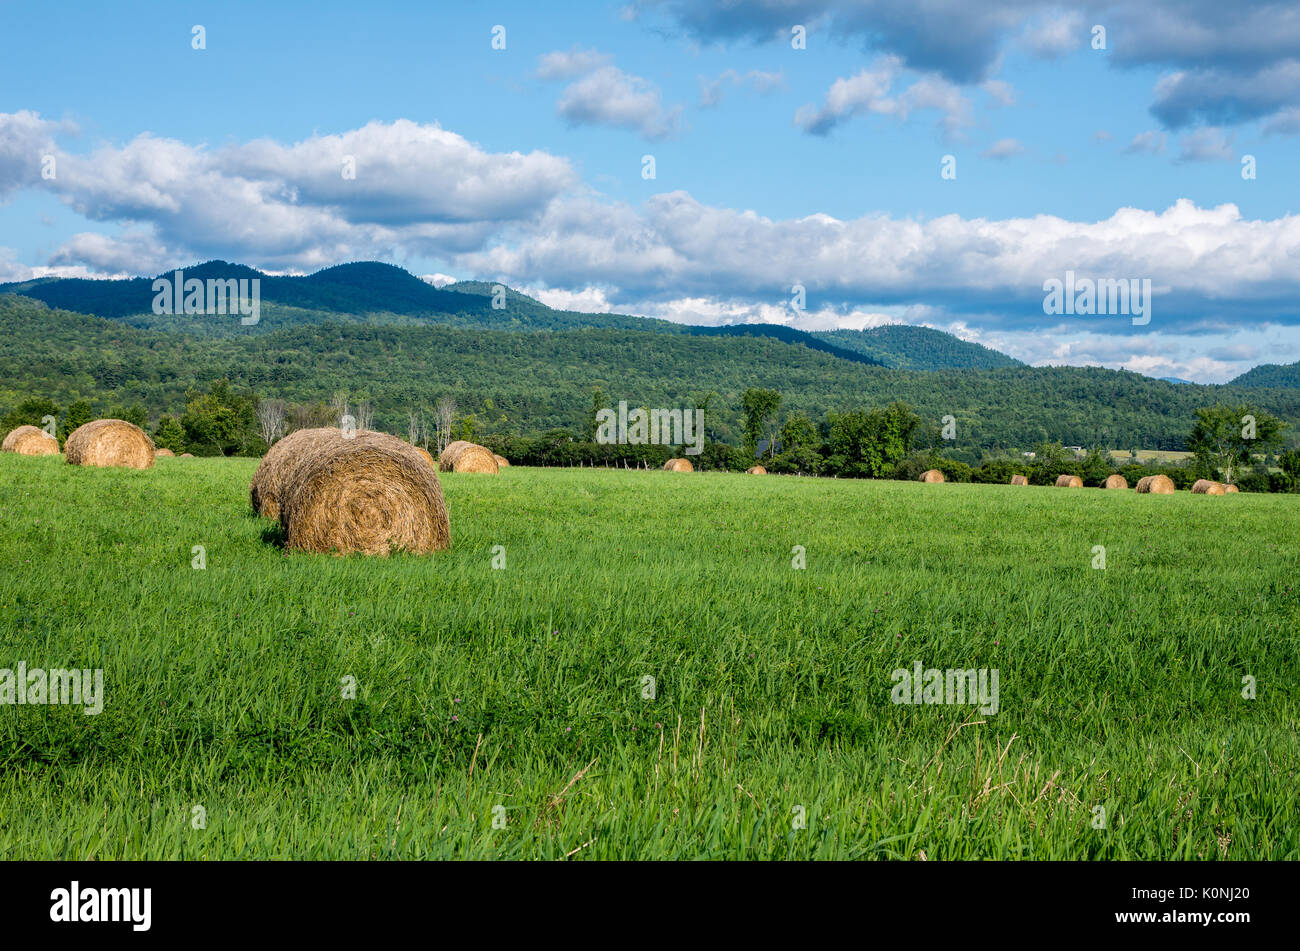 Round balle di fieno in un campo con le Montagne Adirondack in background e il cielo blu con alcune nuvole Foto Stock